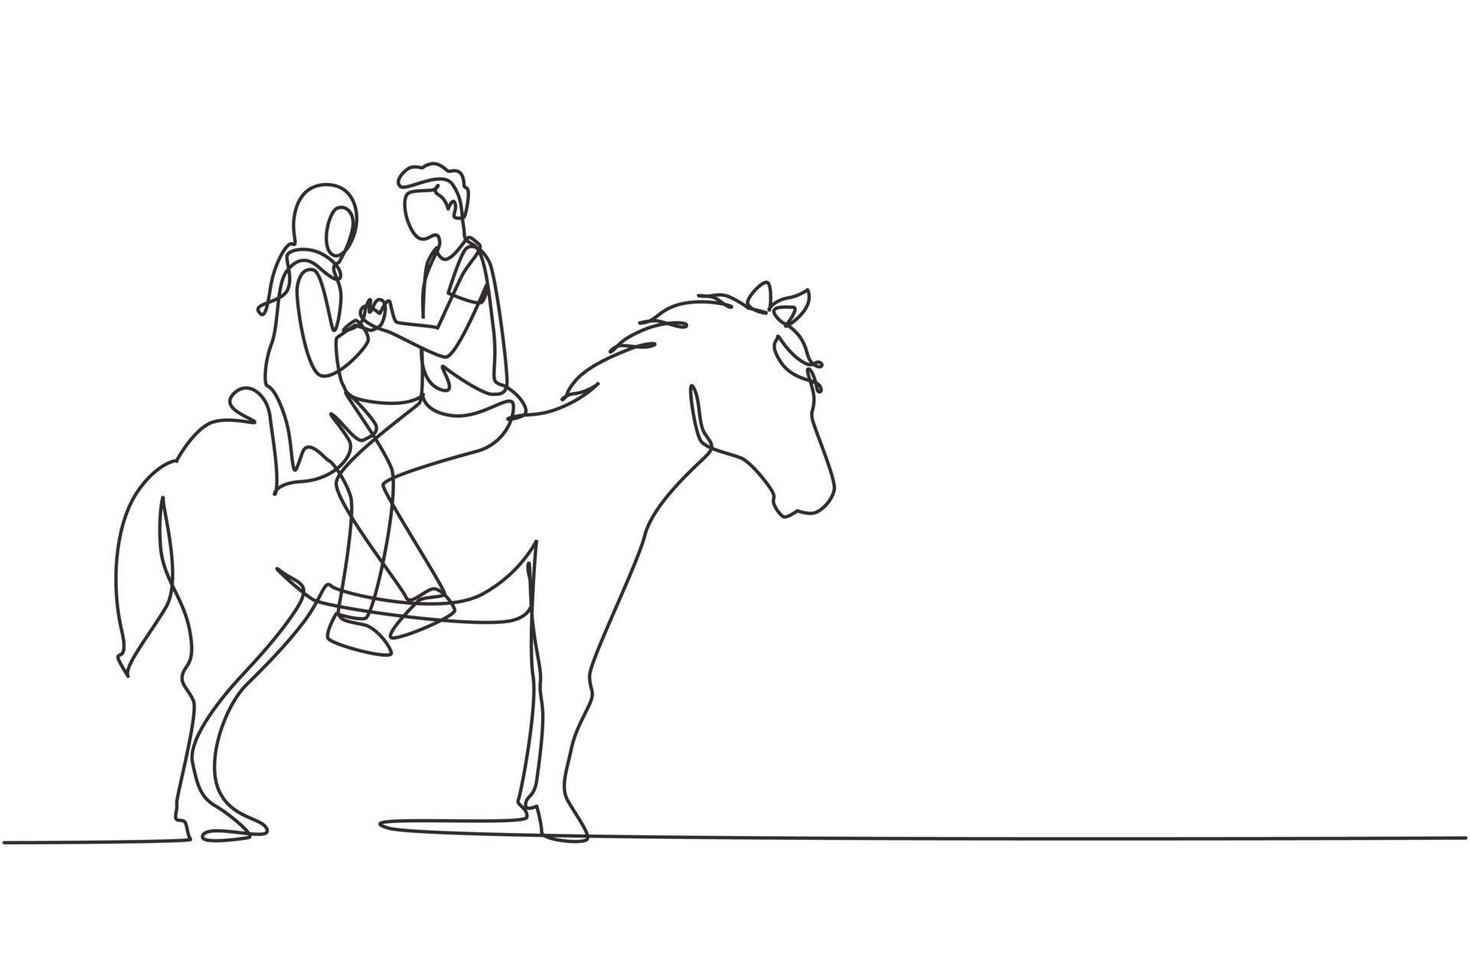 enkele doorlopende lijntekening Arabisch paar rijpaarden van aangezicht tot aangezicht bij zonsondergang. gelukkige man die een huwelijksaanzoek doet met een vrouw. betrokkenheid en liefdesrelatie. dynamische één lijn tekenen grafisch ontwerp vector